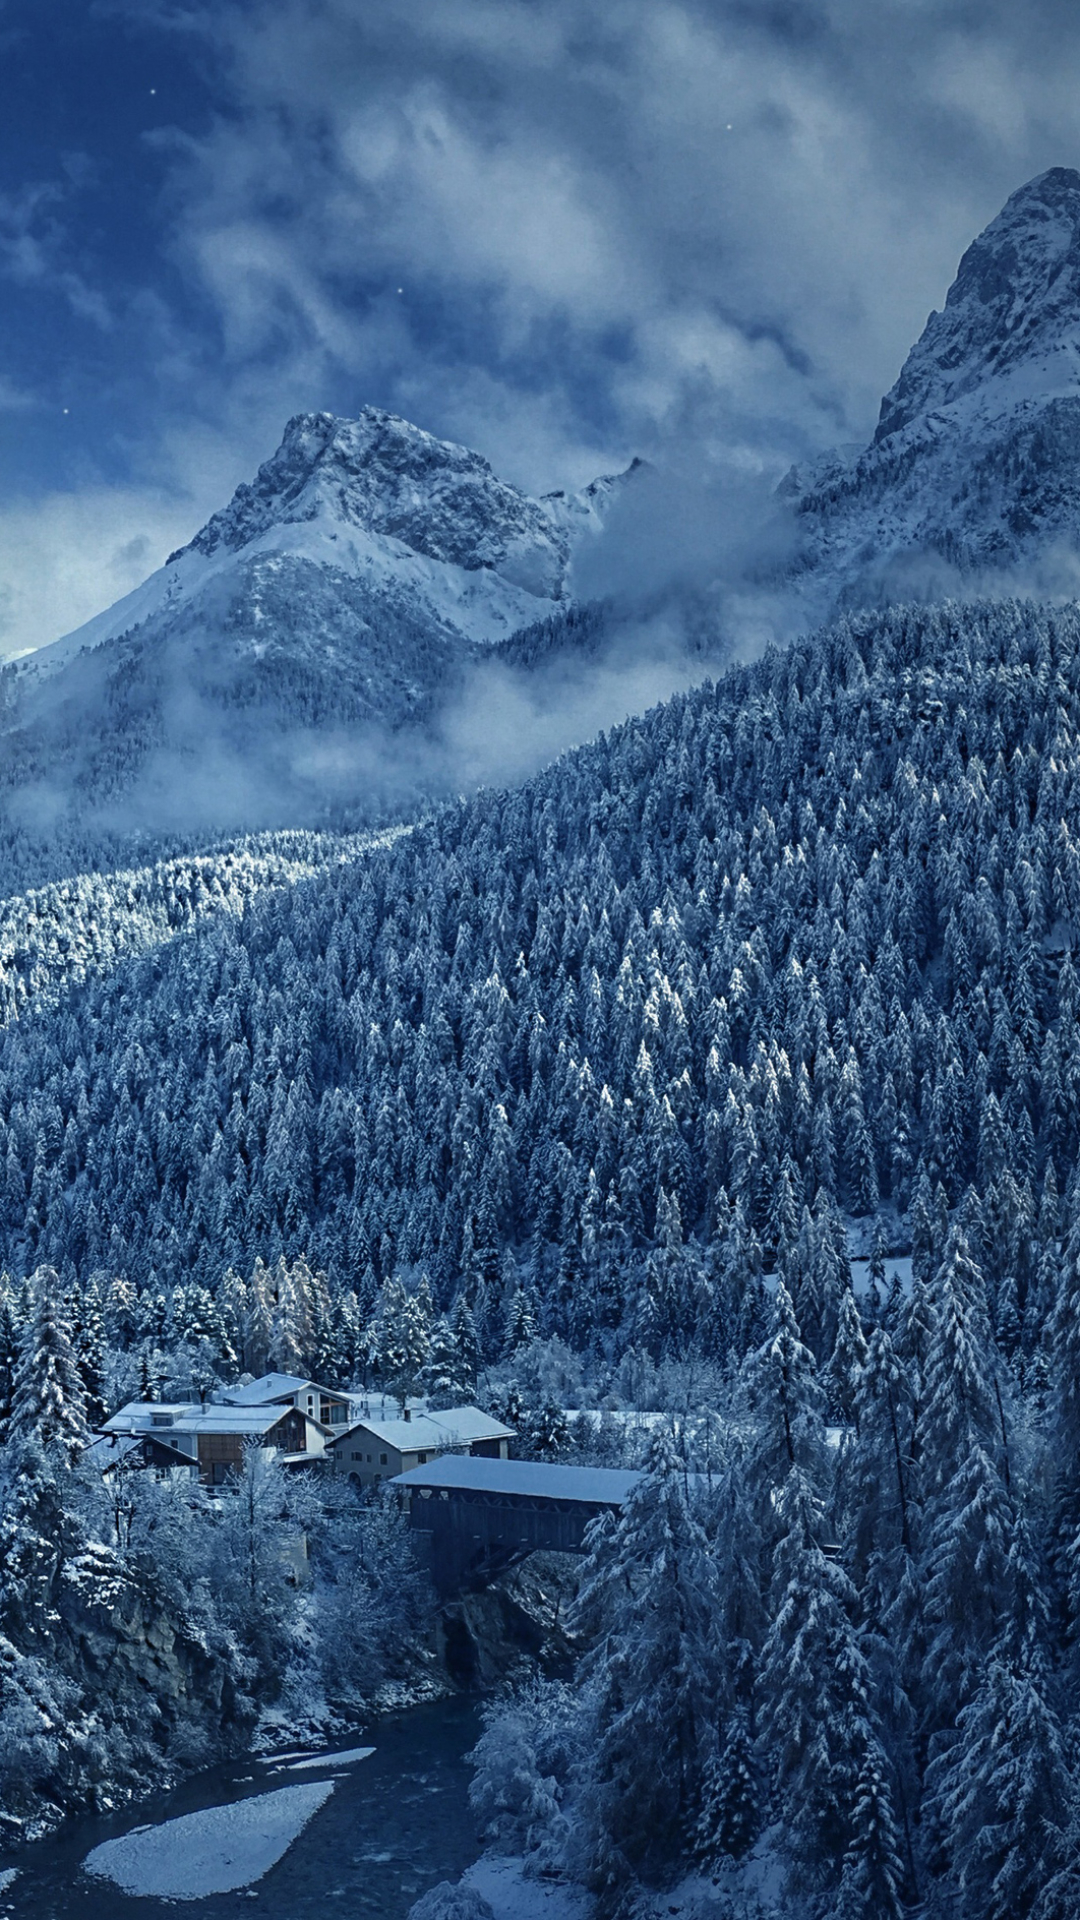 Скачать картинку Зима, Снег, Гора, Фотографии в телефон бесплатно.